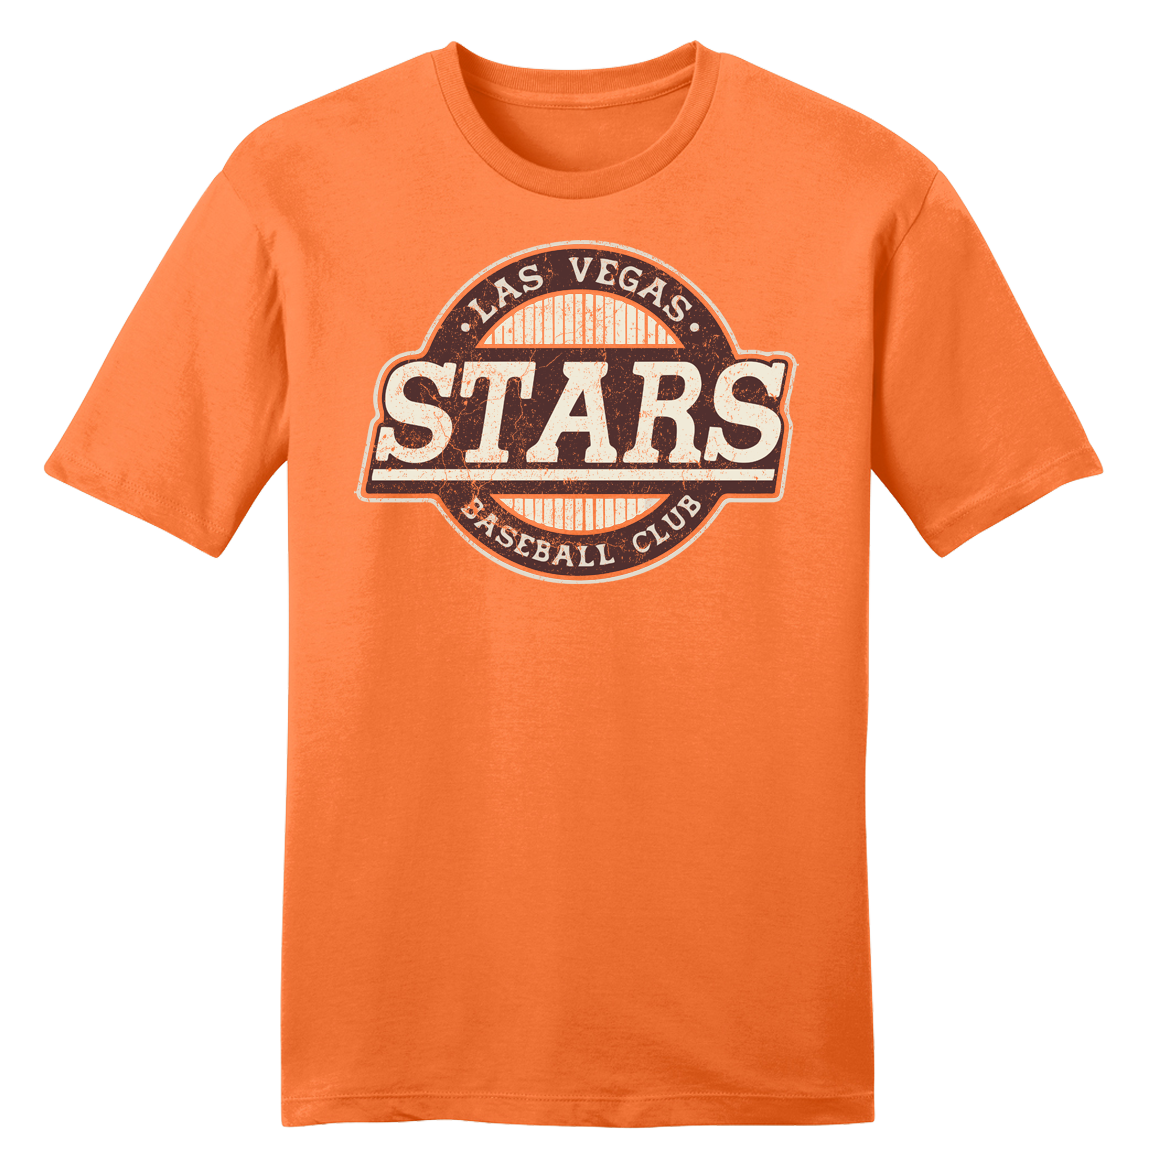 Las Vegas Stars orange and brown T-shirt